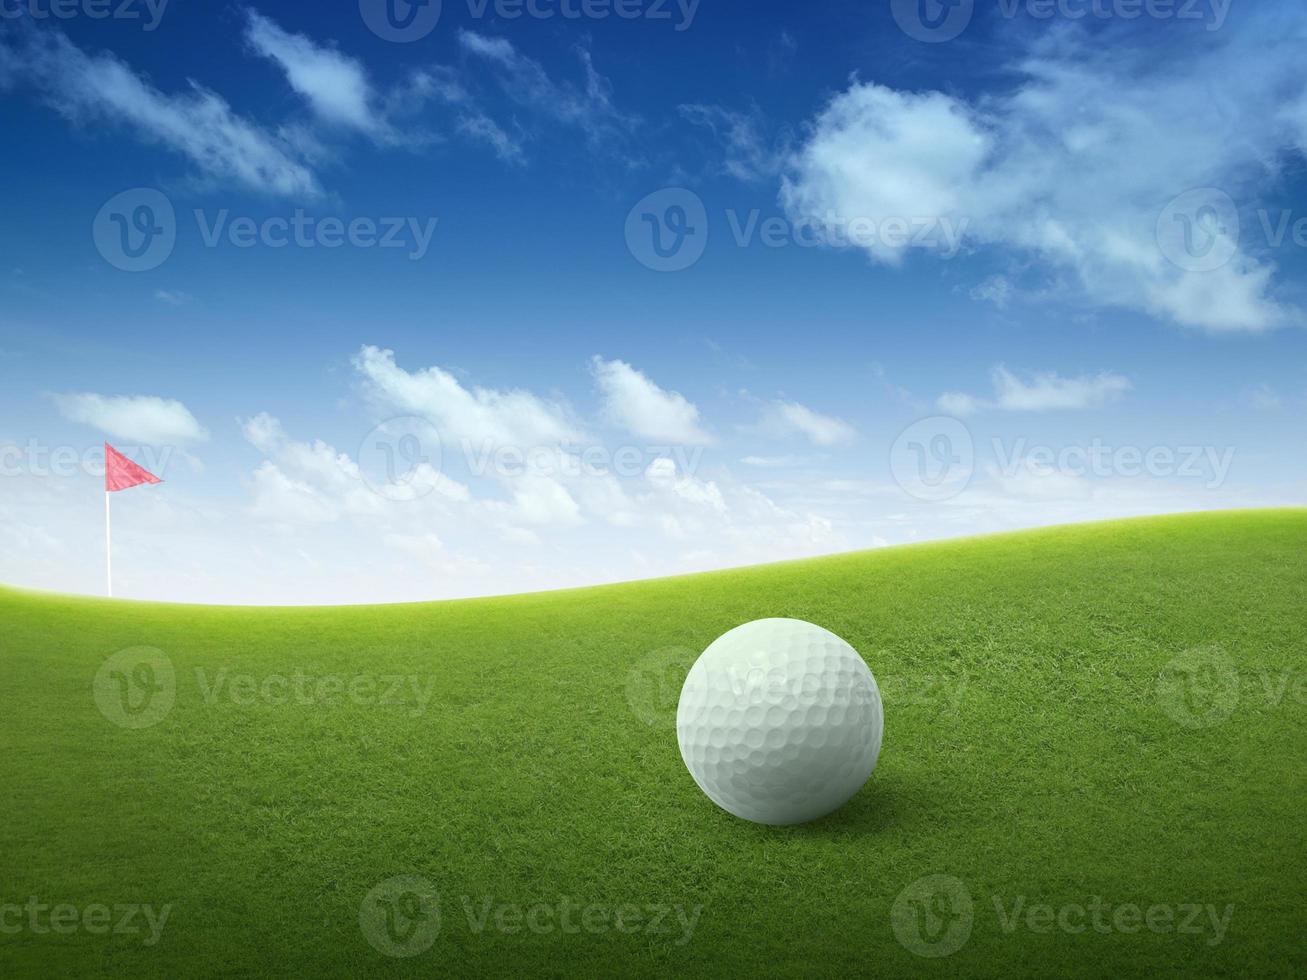 cerrar la pelota de golf en el campo de hierba verde y la bandera roja de golf en la calle verde con un hermoso cielo azul foto